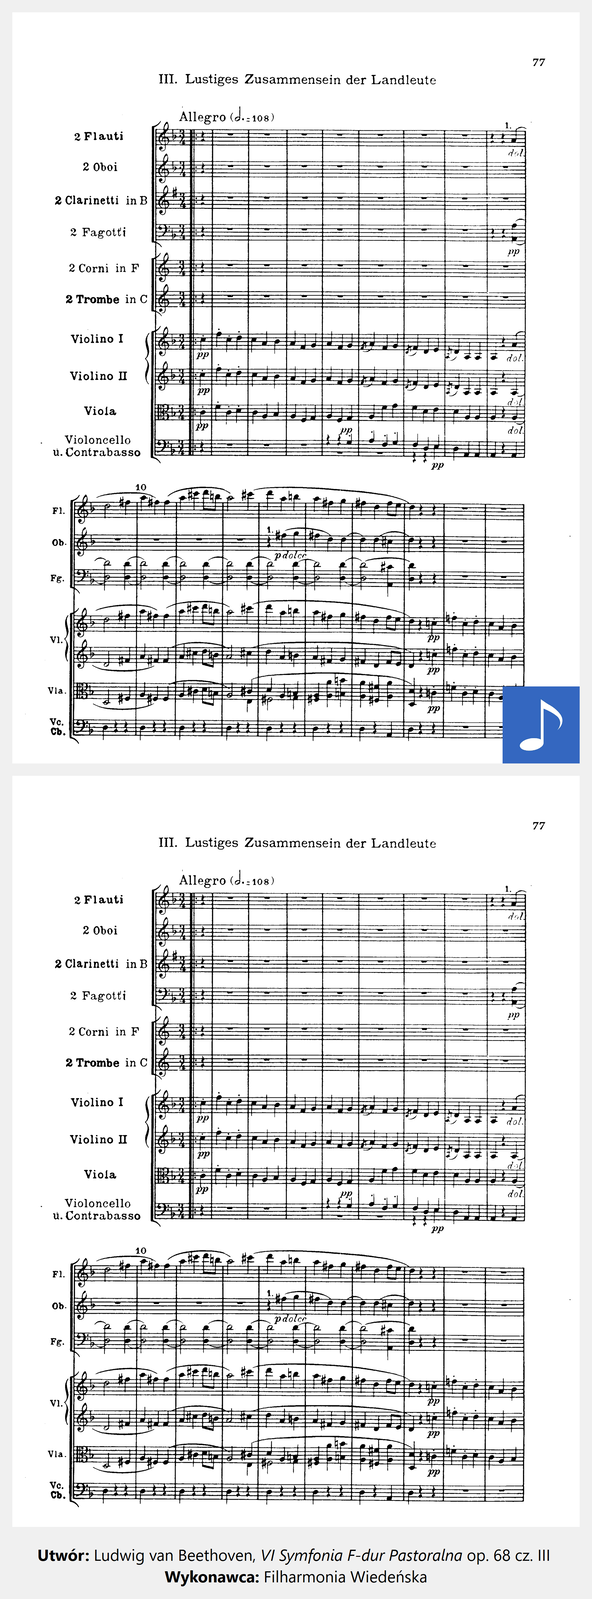 Ilustracja interaktywna zawiera pierwszą stronę partytury „VI Symfonii F-dur Pastoralnej” op. 68 cz. III Ludwiga van Beethovena. Po kliknięciu kursorem myszy na grafikę przedstawiającą nuty, zostanie wyświetlona informacja dodatkowa oraz odtworzony utwór muzyczny. 1. Utwór: Ludwig van Beethoven, VI Symfonia F-dur Pastoralna op. 68 cz. III
Wykonawca: Filharmonia Wiedeńska. Kompozycja ma szybkie tempo. Cechuje ją radosny, sielankowy charakter.